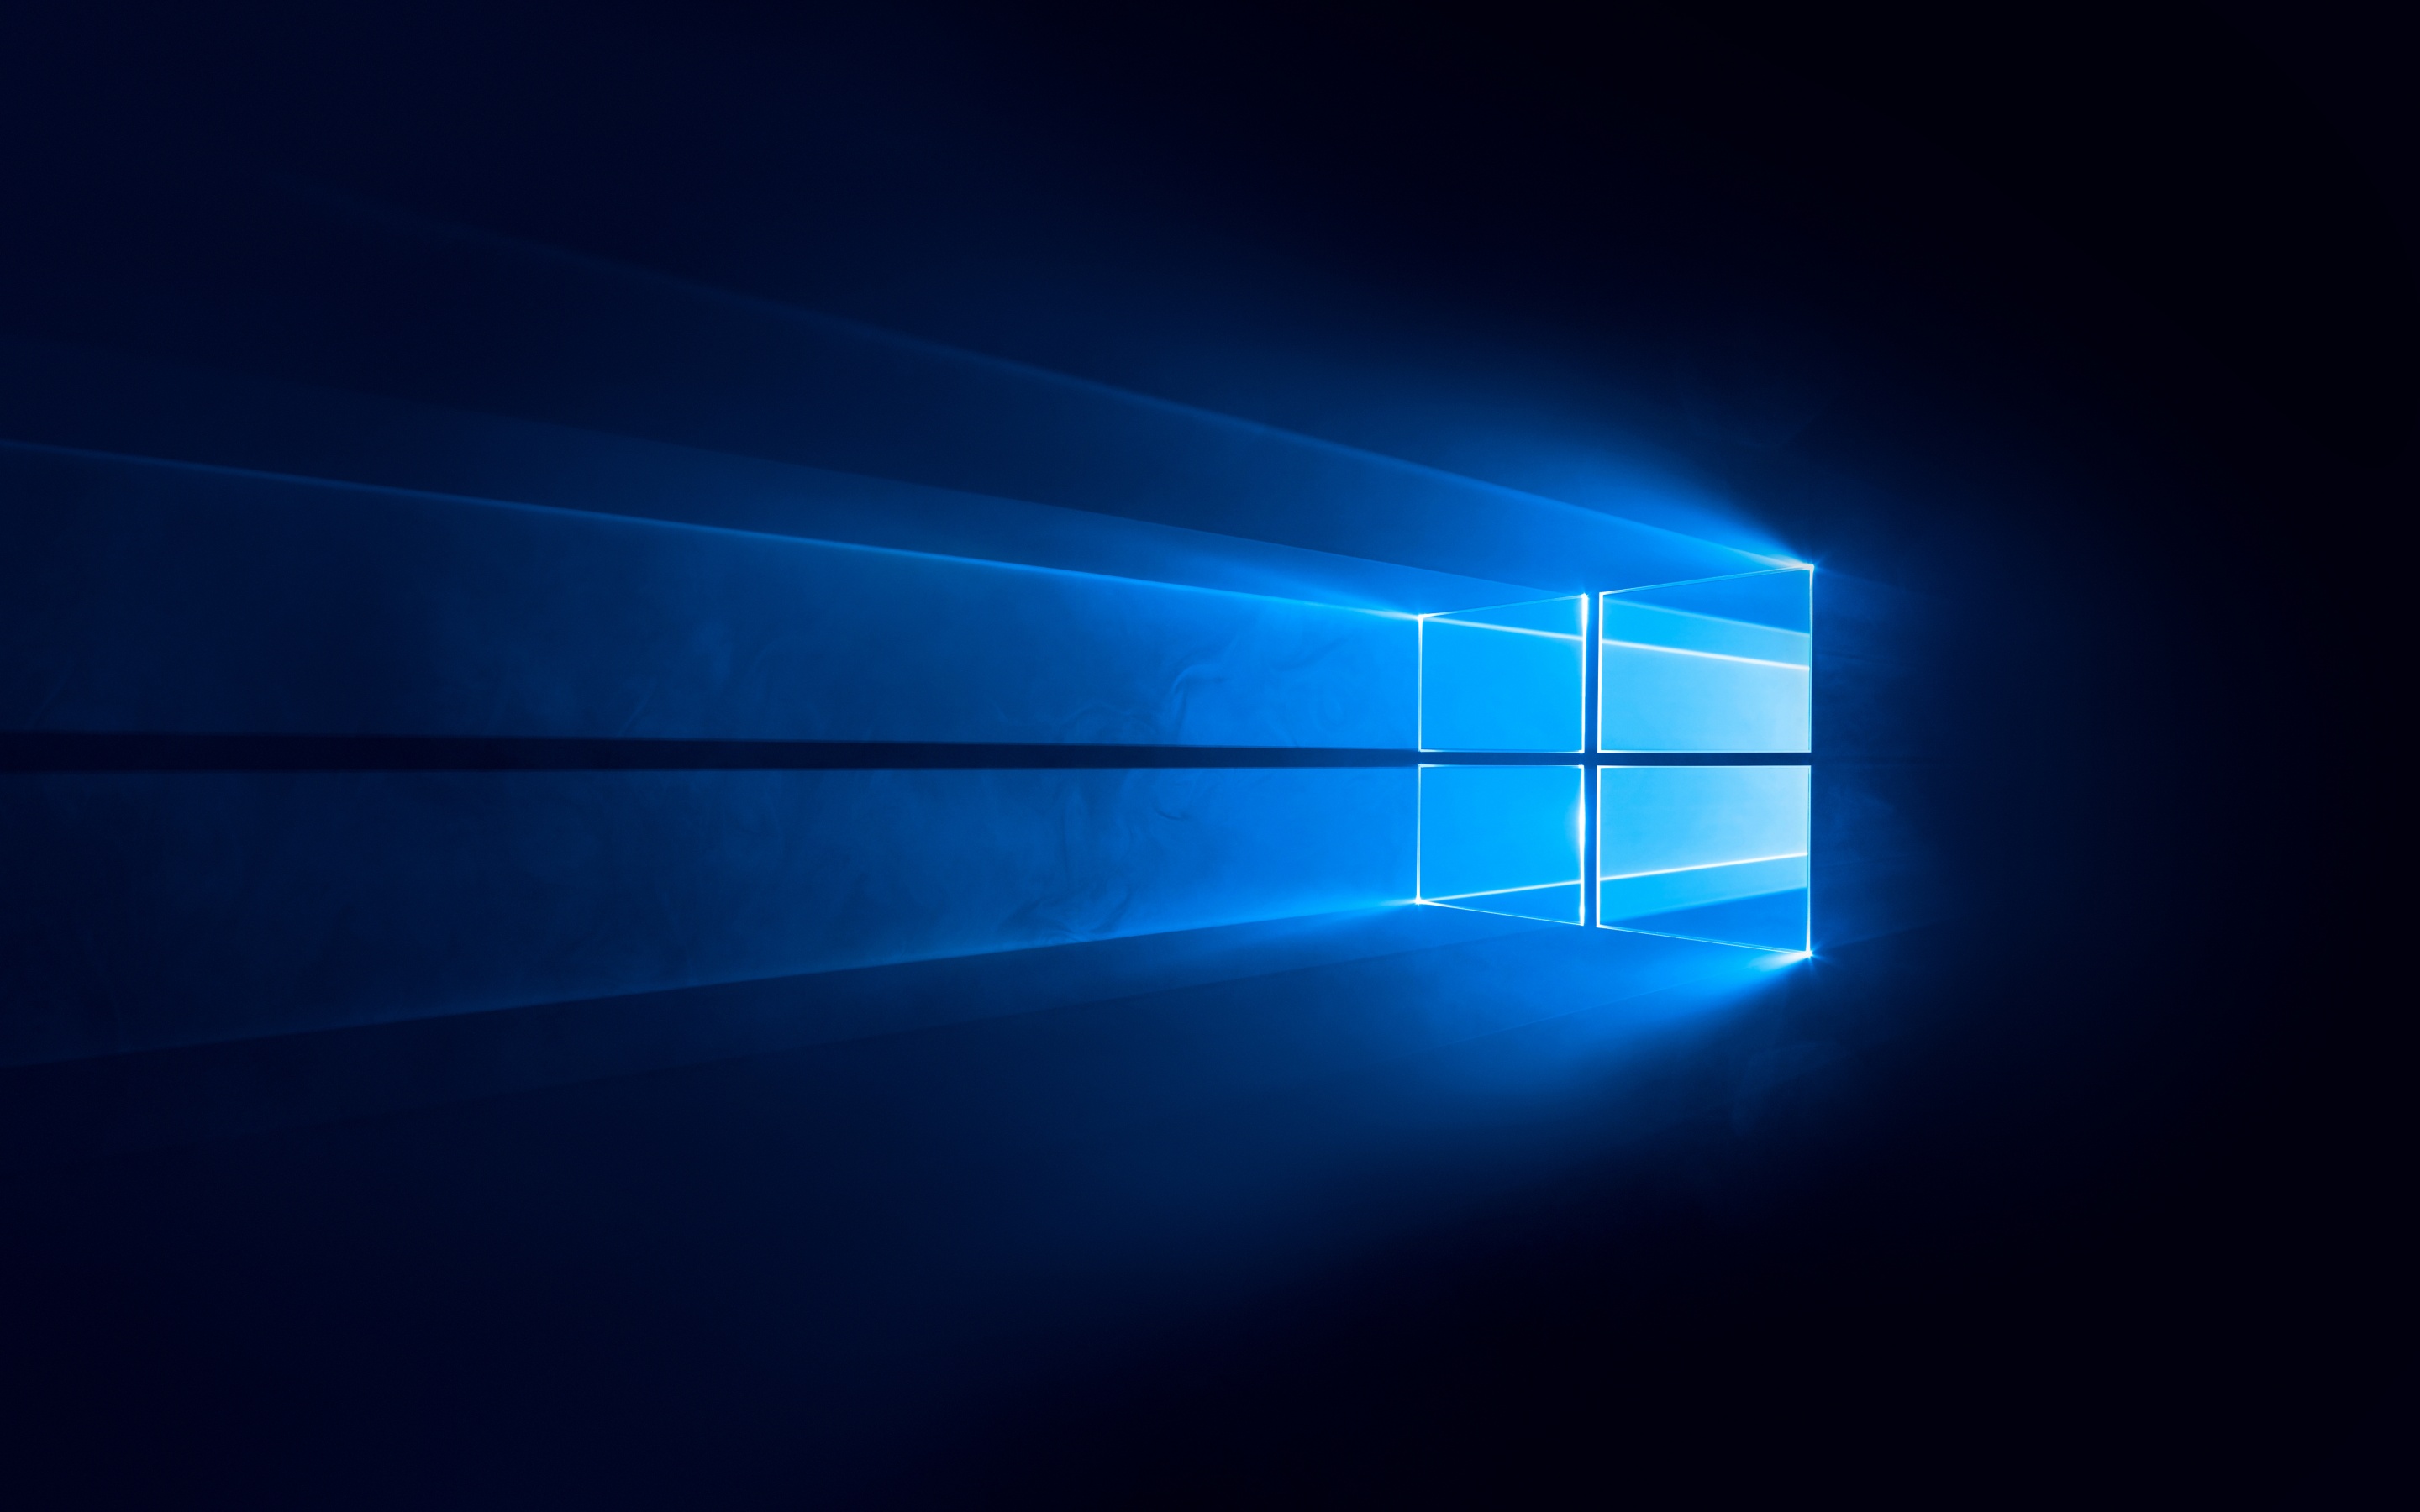 Hình nền Windows 10 màu xanh đen 4K sẽ đưa bạn vào một không gian công nghệ đầy mê hoặc. Tận hưởng chất lượng hình ảnh sắc nét lên đến 4K, những tông màu tối rất lý tưởng để tăng tính thẩm mỹ của máy tính của bạn.